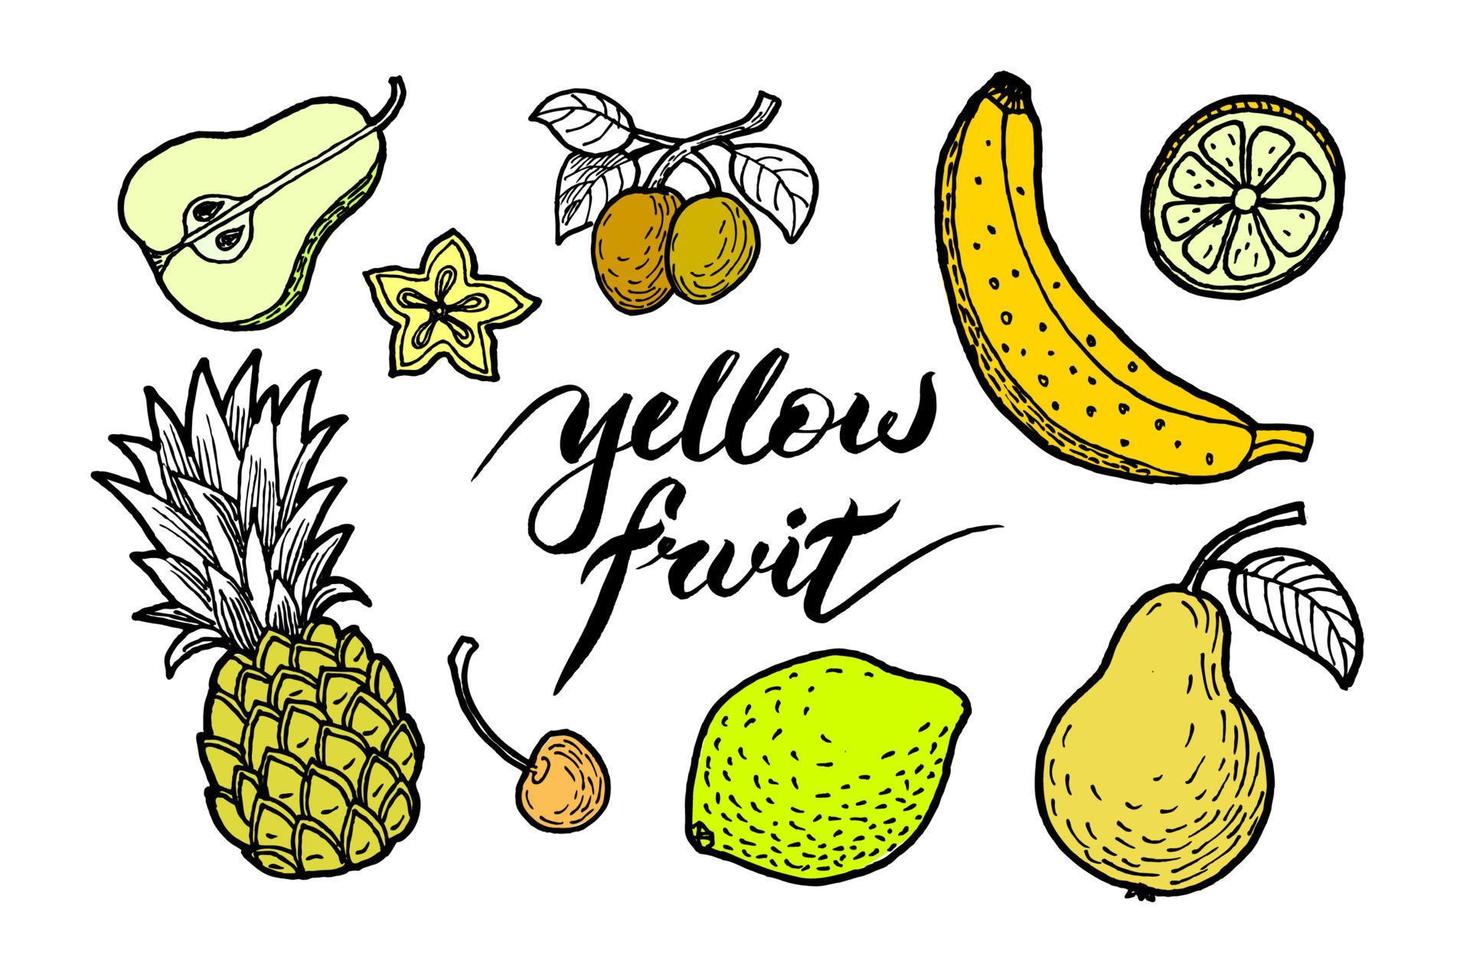 ensemble d'illustrations de différents fruits de couleur jaune comme la poire, la banane, l'ananas, le citron, l'abricot, la cerise douce et la carabole vecteur